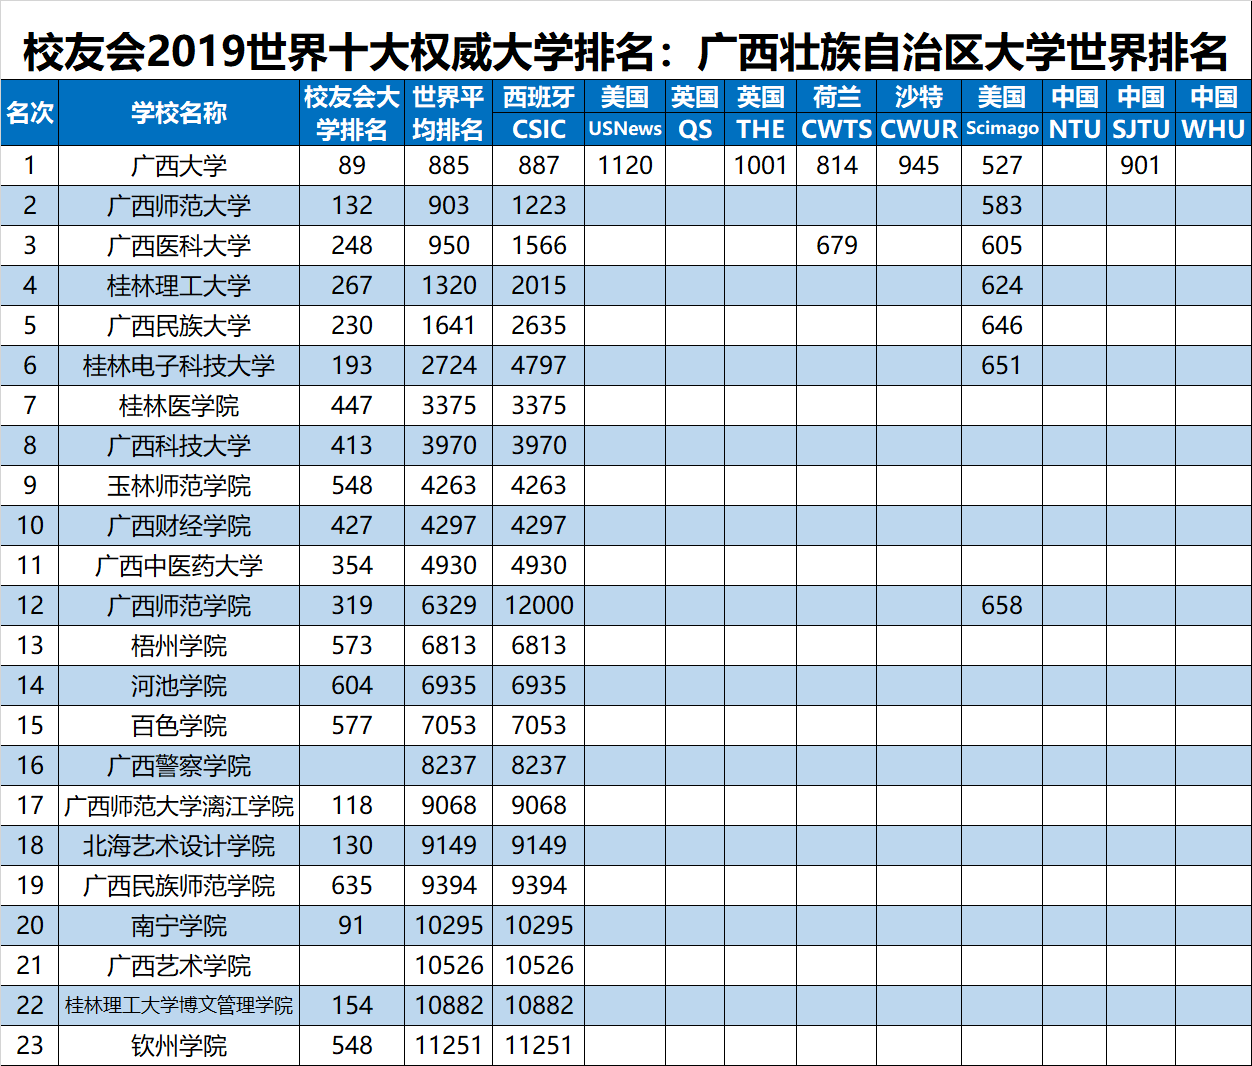 2019世界十大大学排名最新公布,中国哪所大学